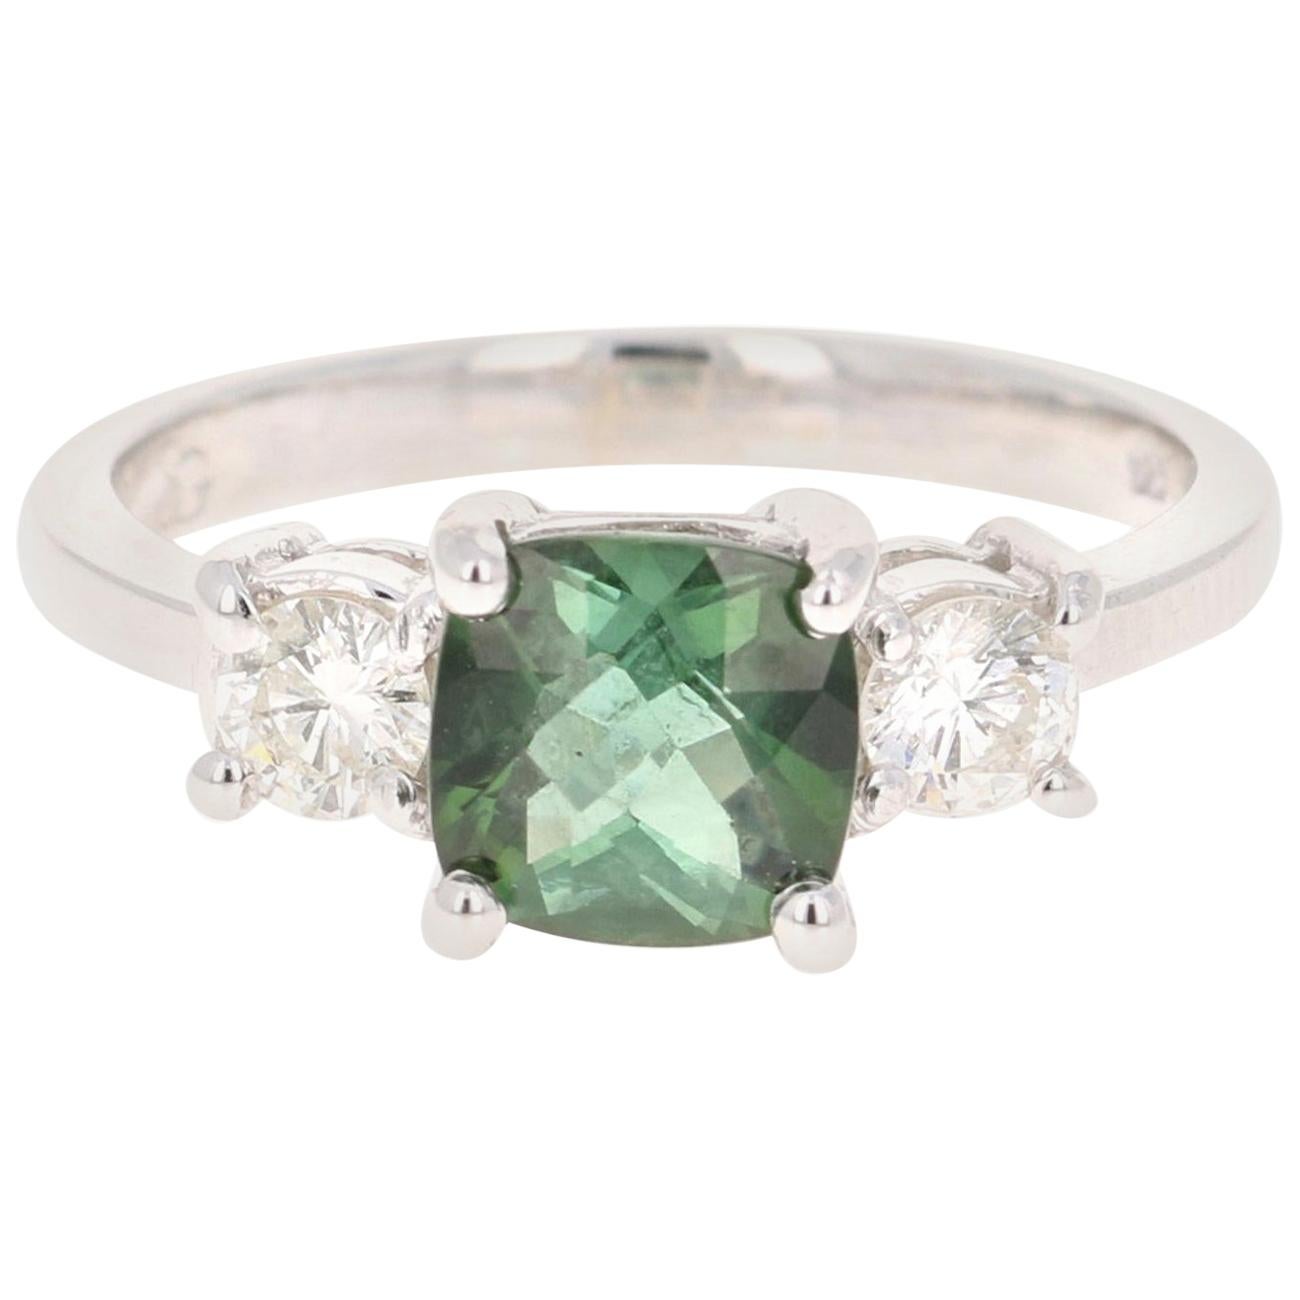 1.80 Carat Green Tourmaline Diamond Ring 14 Karat White Gold Three-Stone Ring